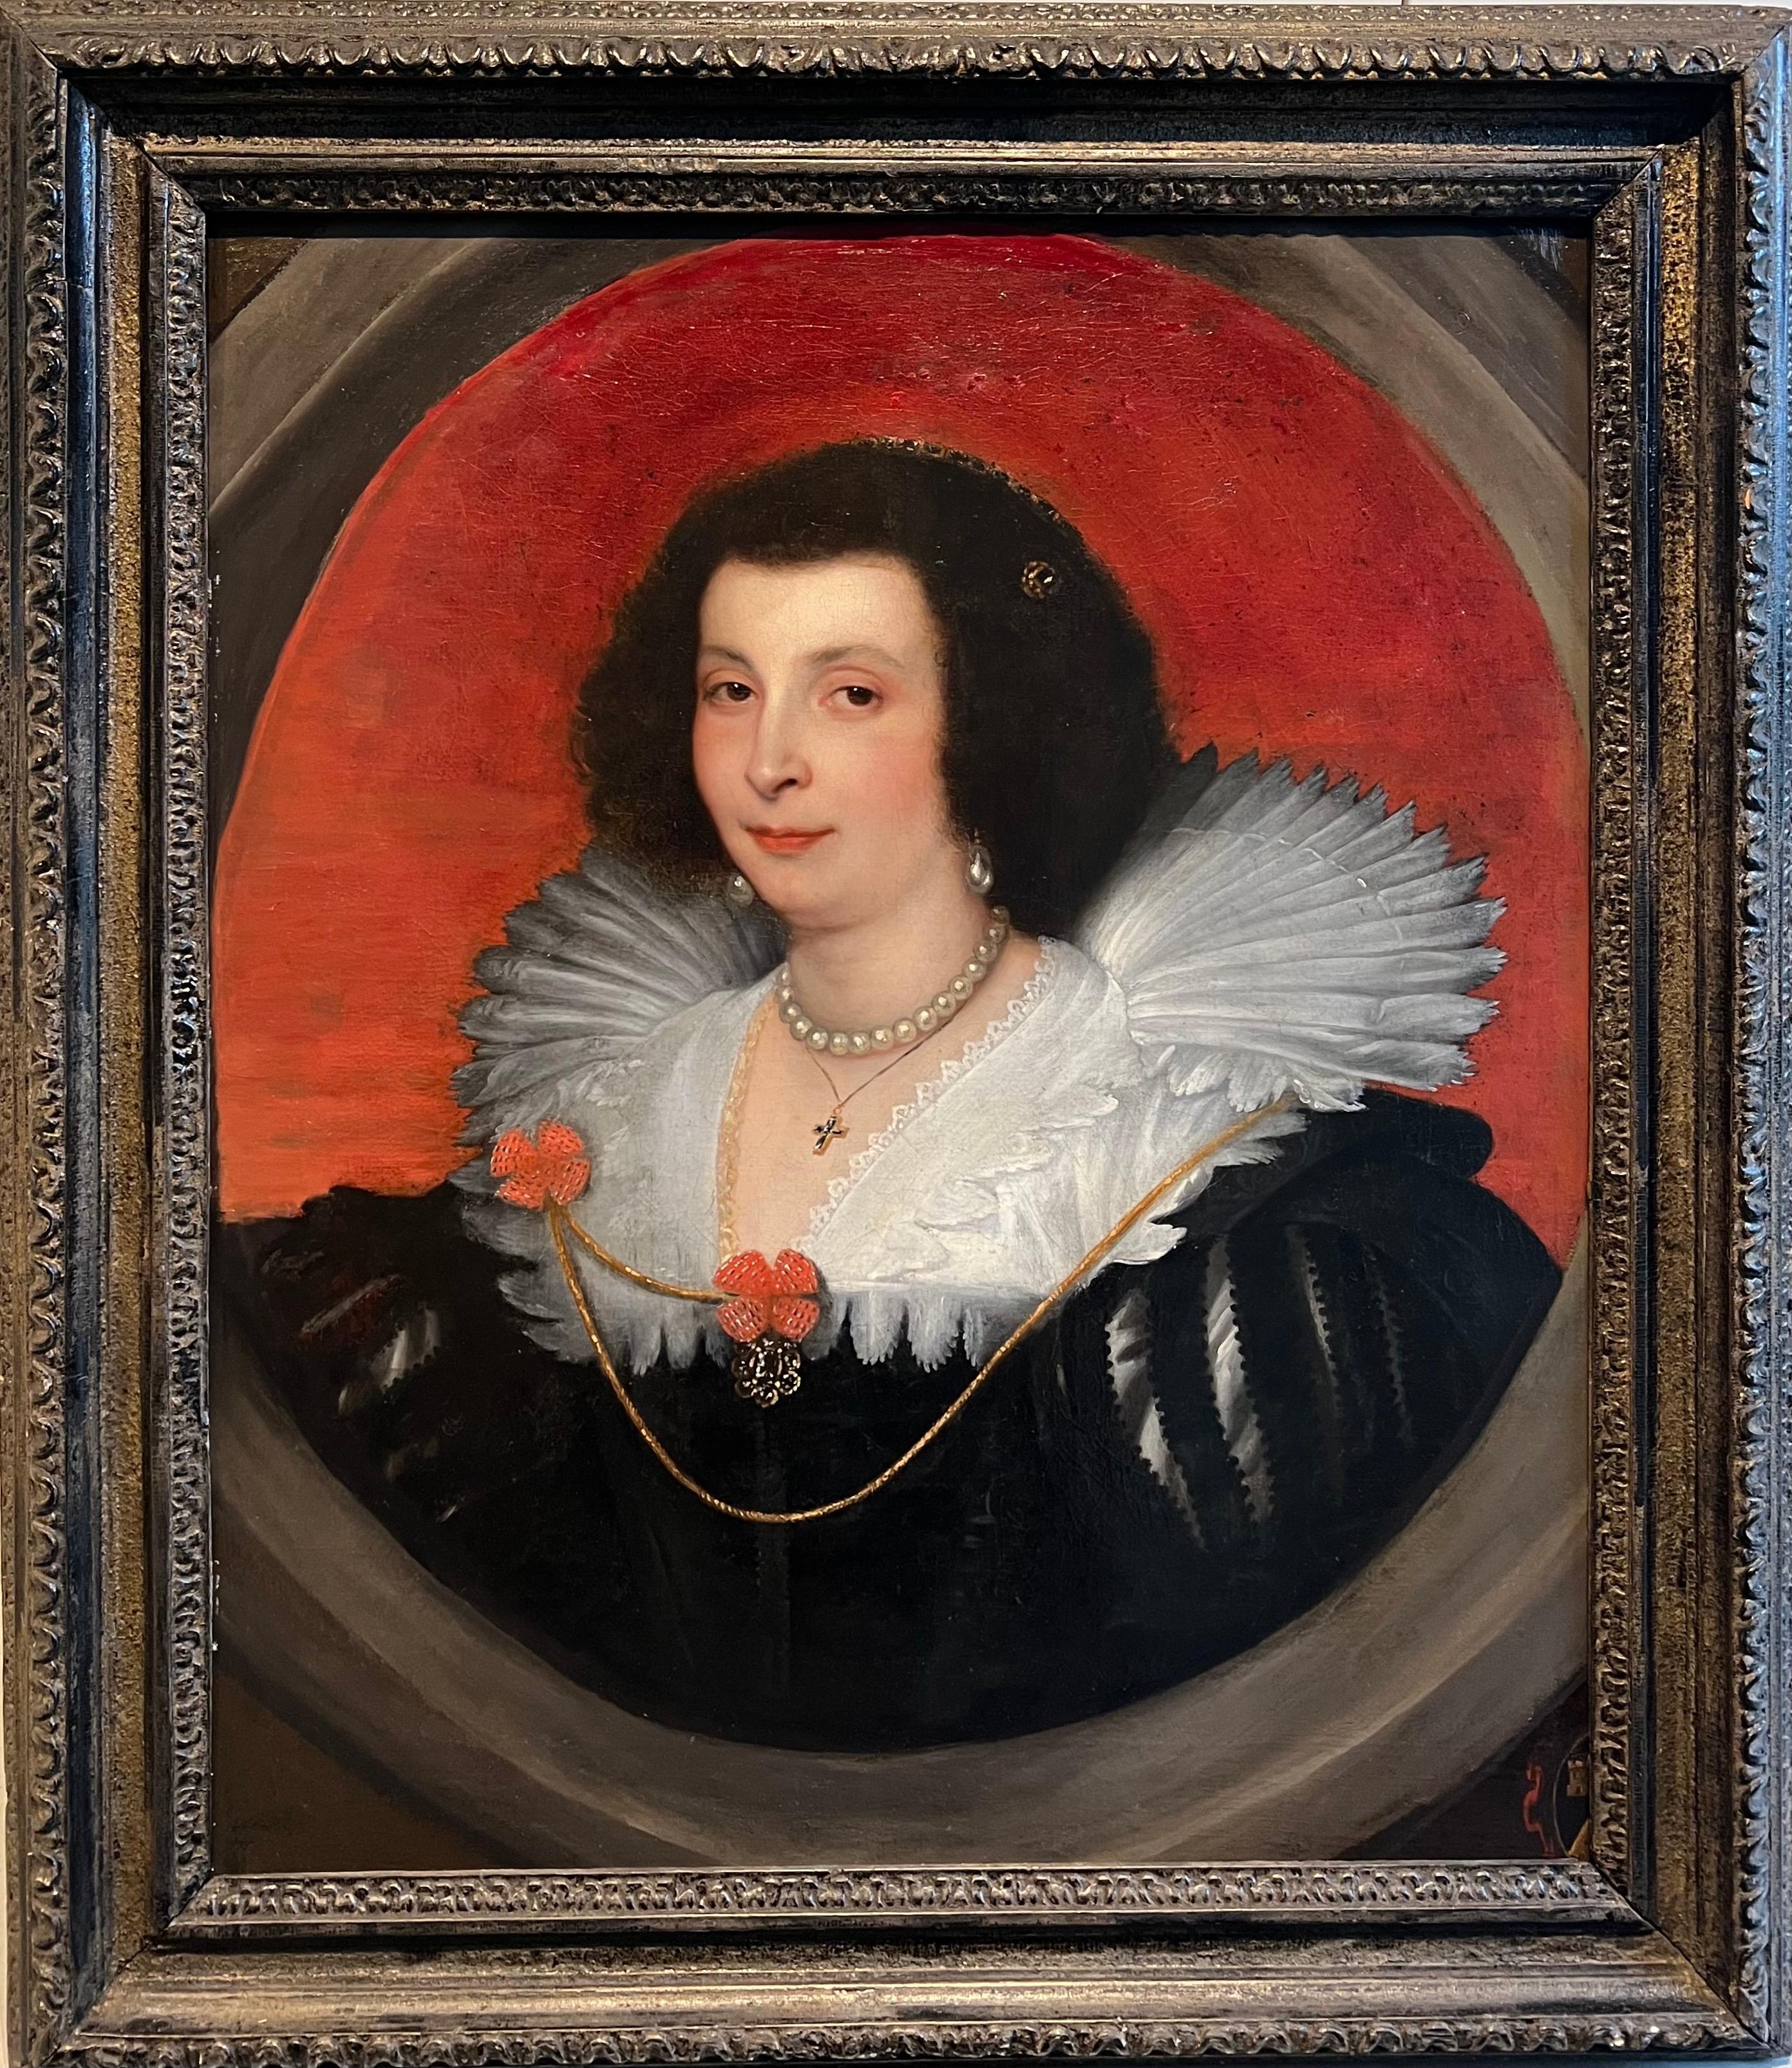 Porträt von Anna Maria de Camiudo aus dem 17. Jahrhundert – Königlicher Hof 1630, Spanien